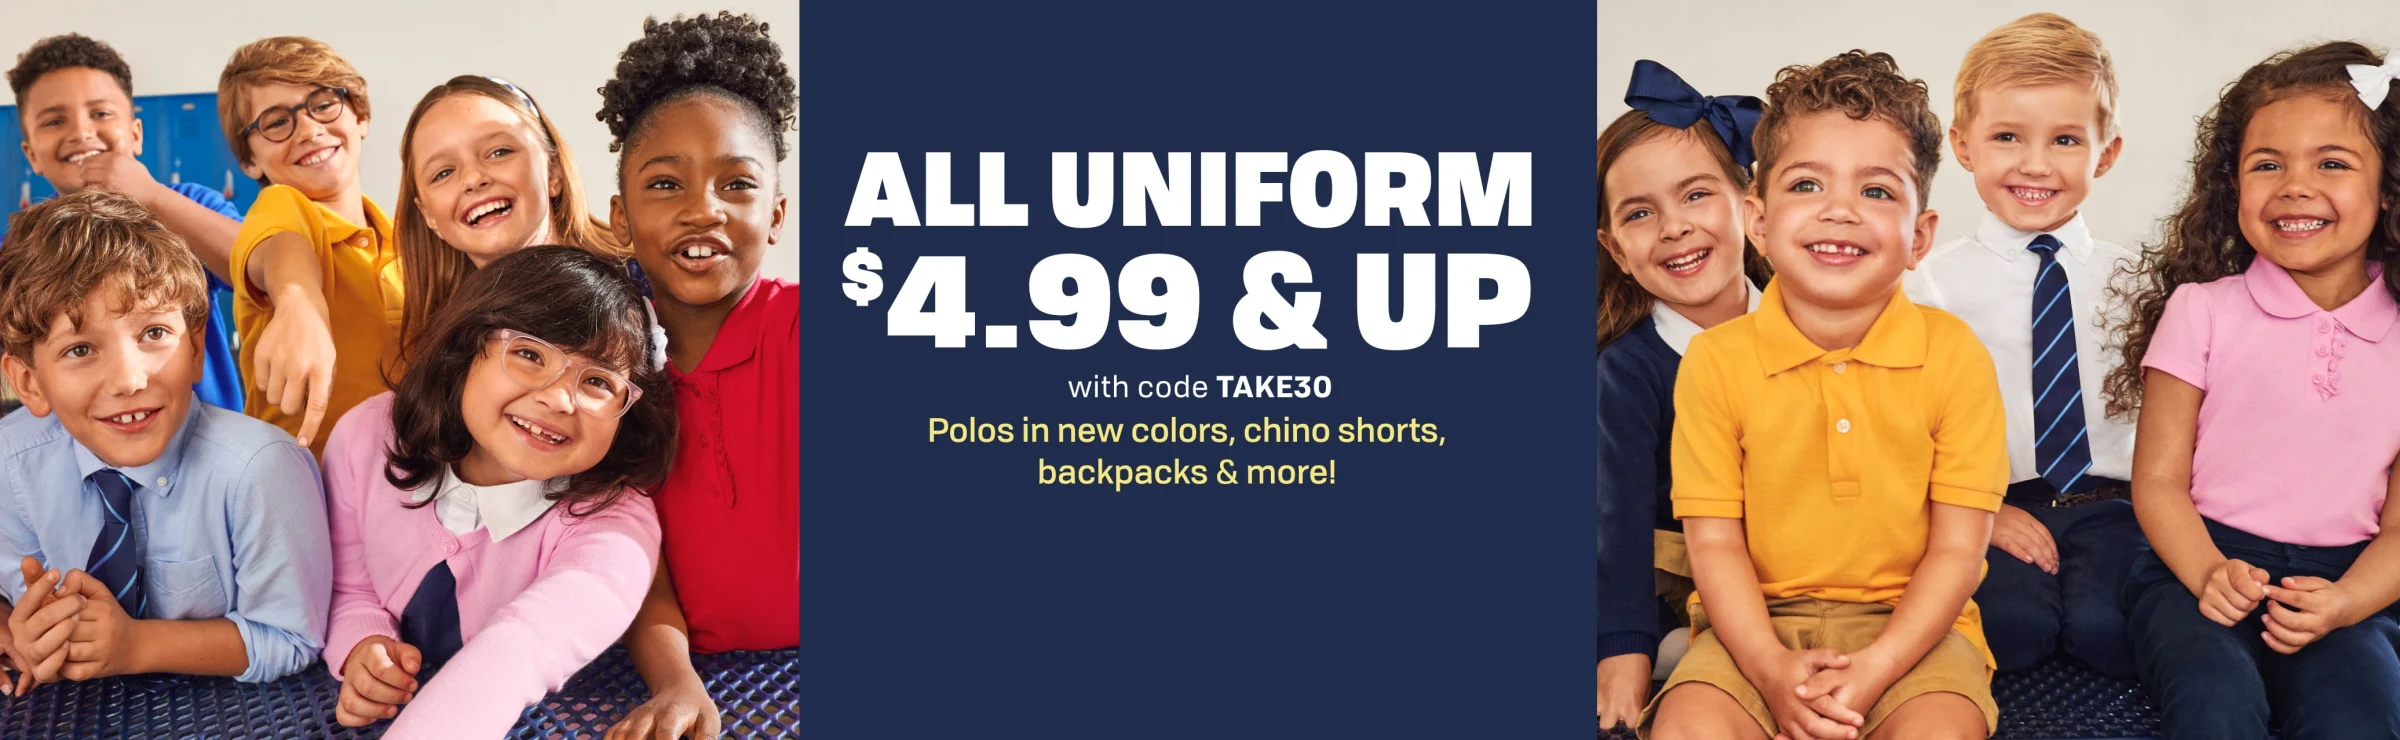 Uniforms Sale